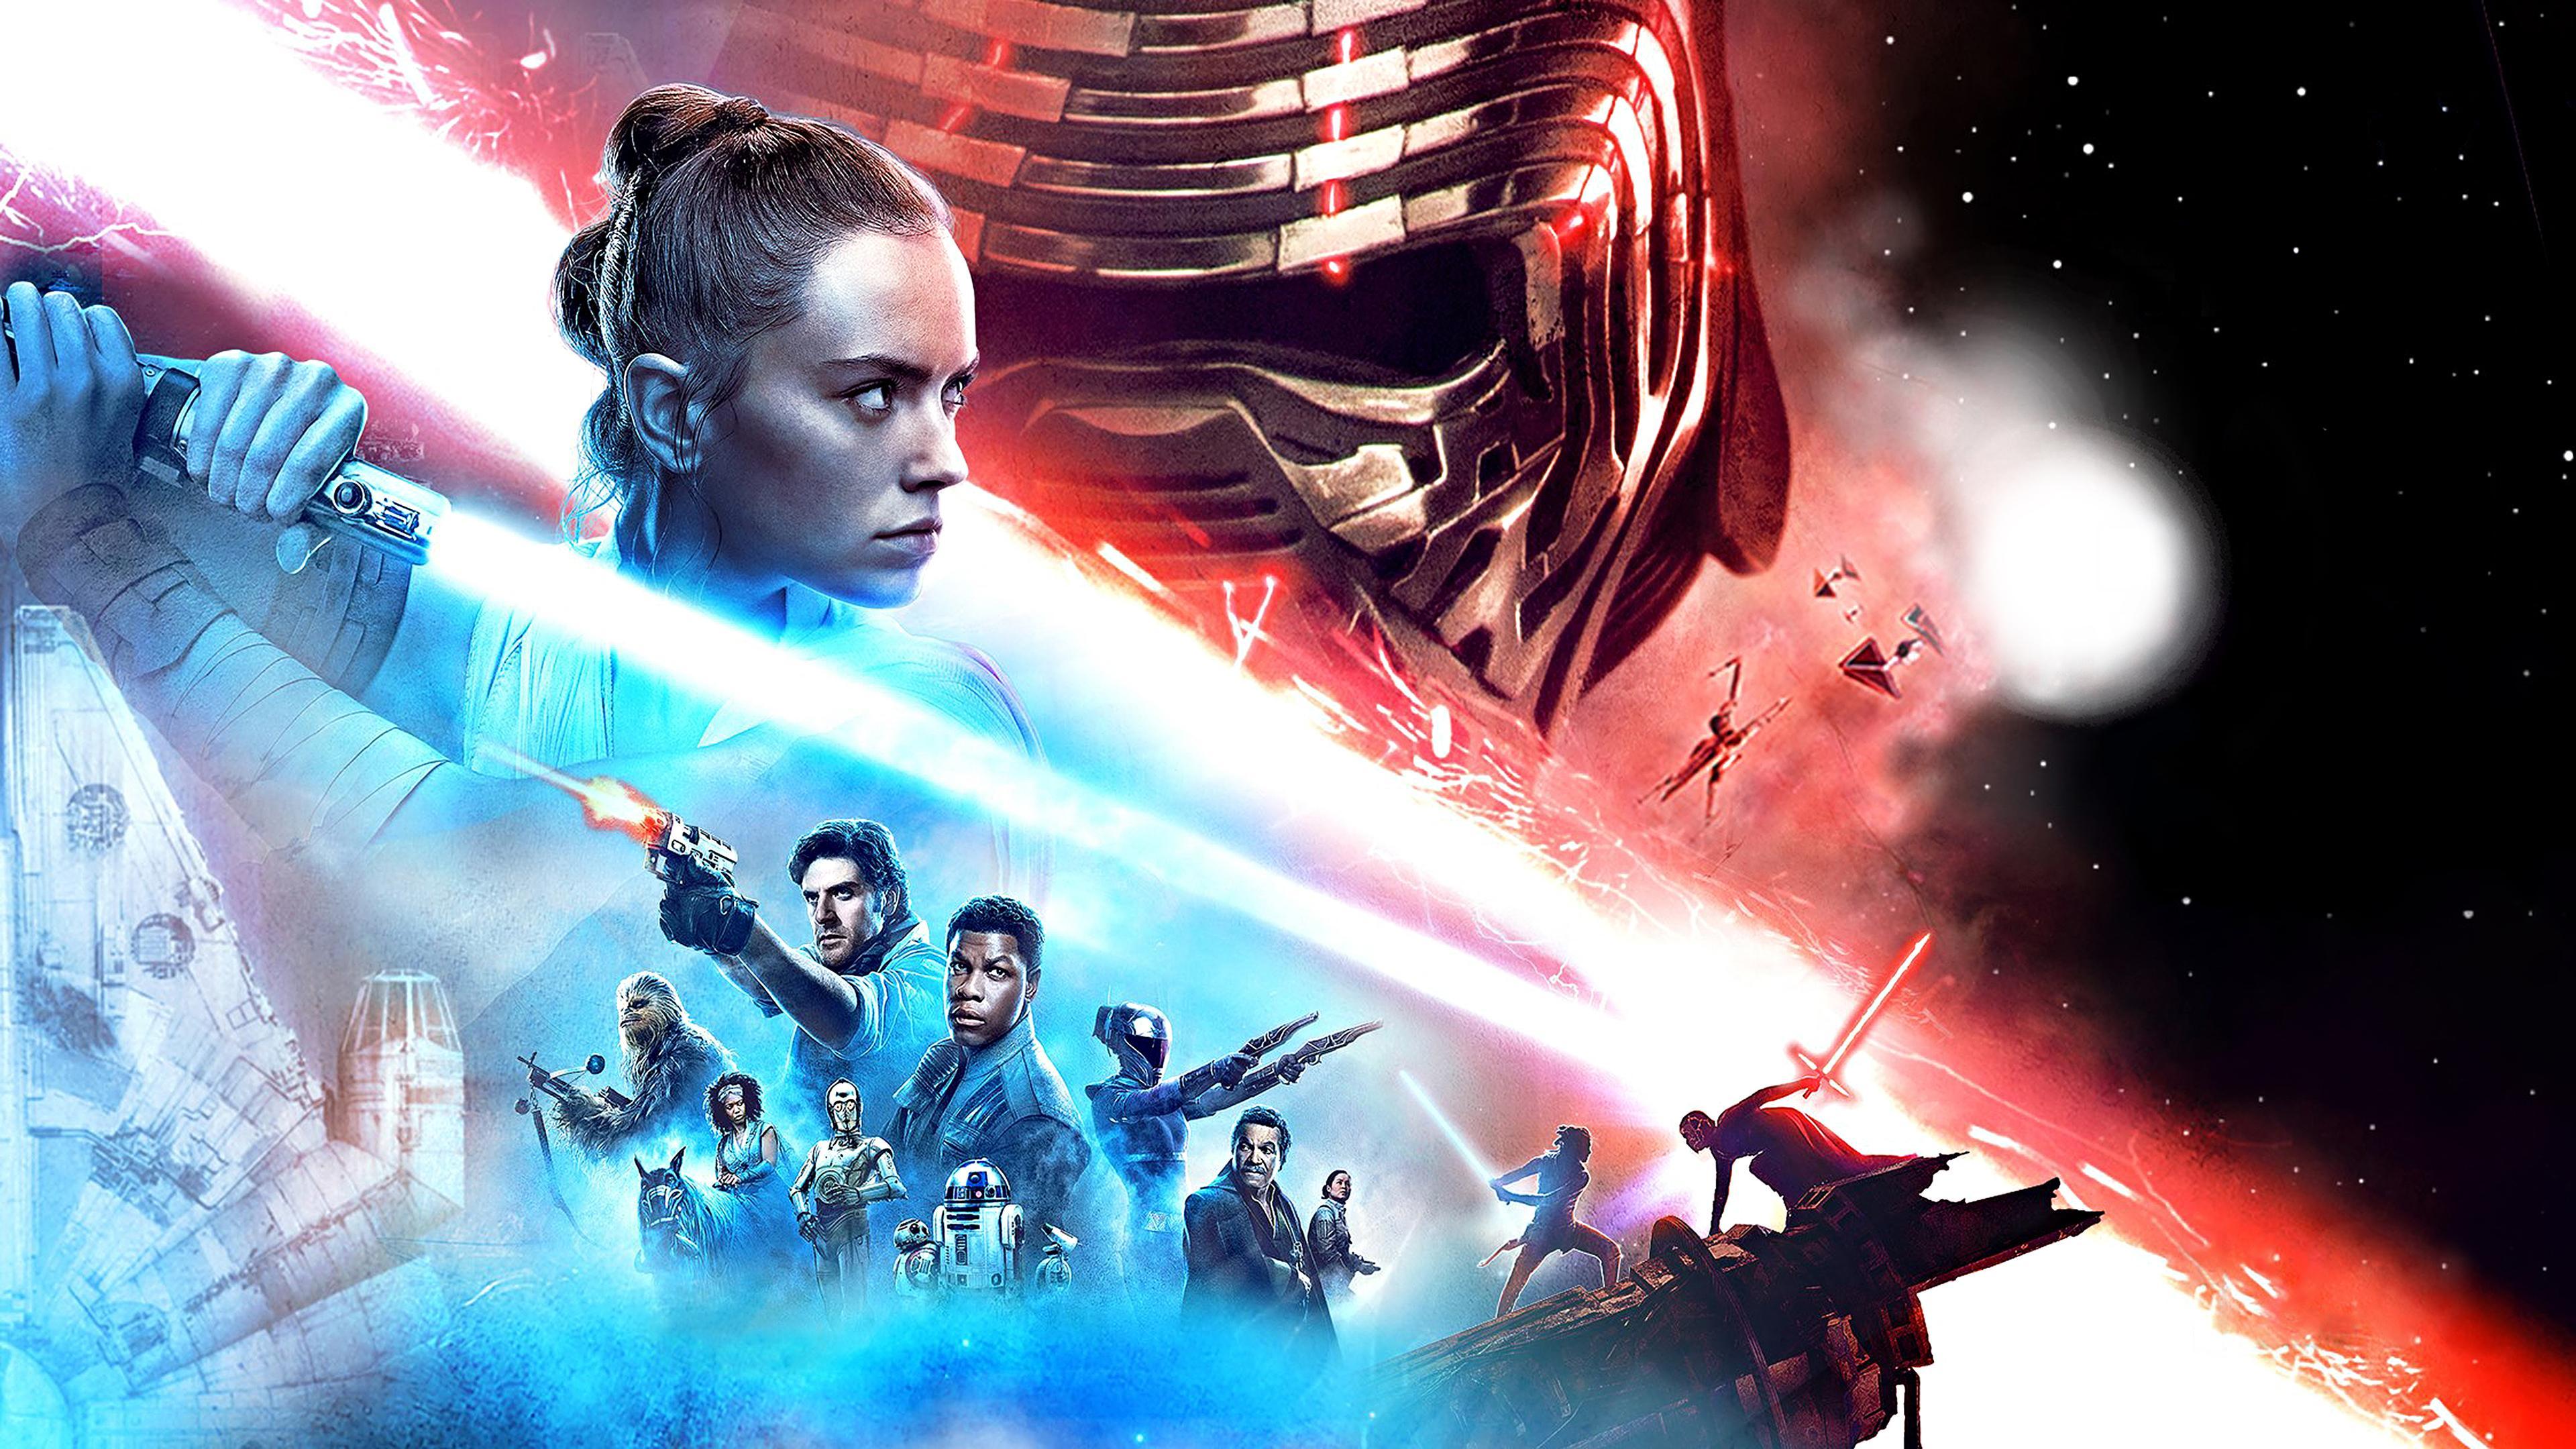 Star Wars The Rise of Skywalker 2019 4K Wallpaper. HD